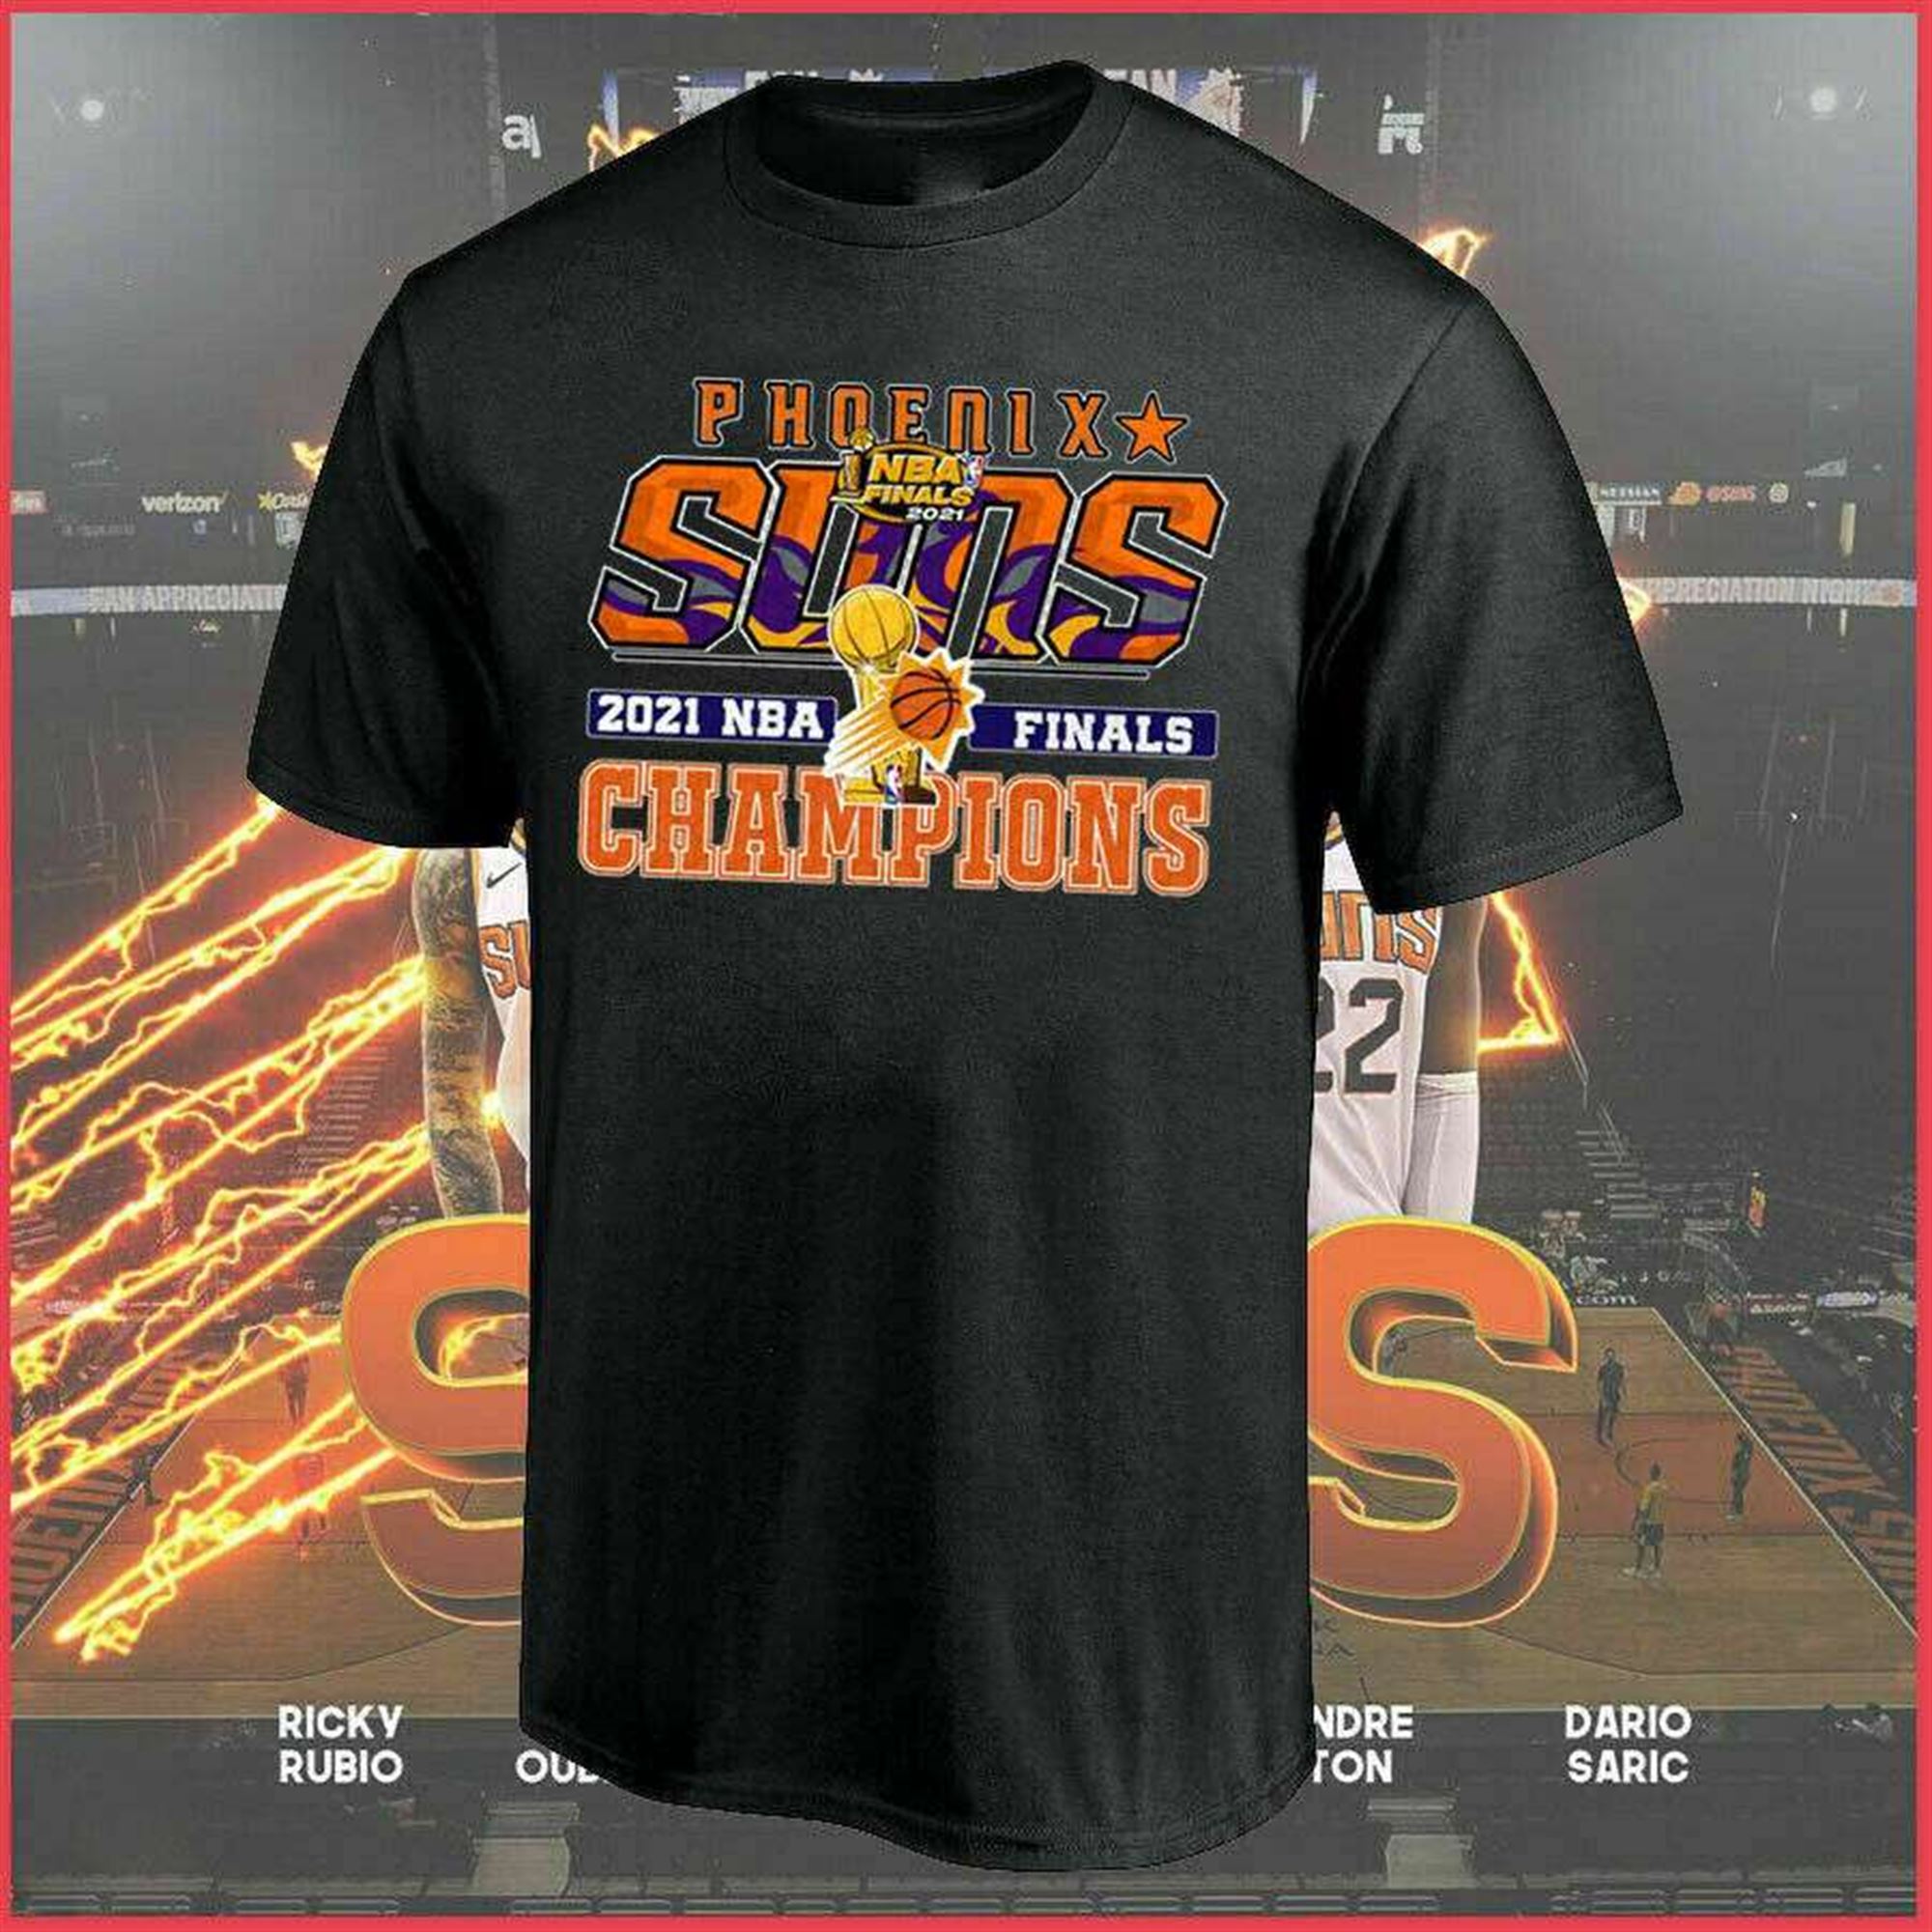 Phoenix Suns Nba Finals Nba Basketball Team Champ 2021 T-shirt Full Size Up To 5xl